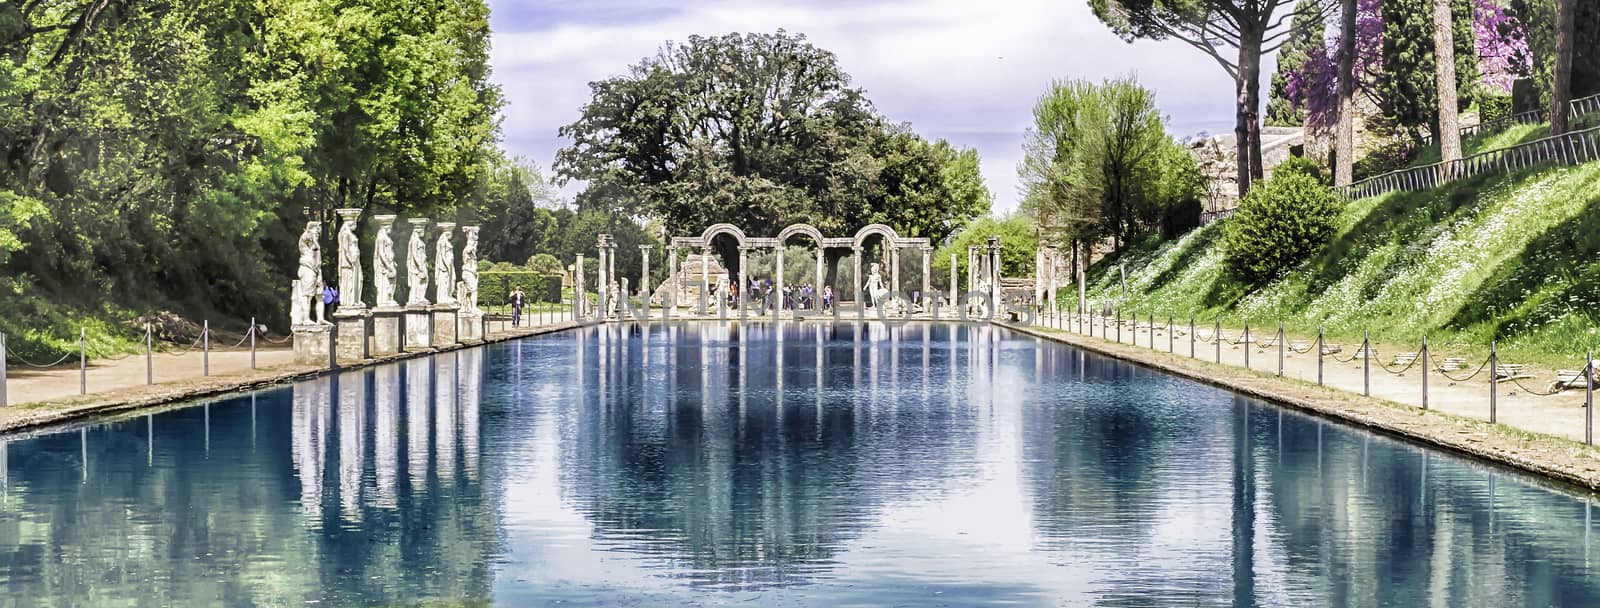 The Canopus, ancient pool in Villa Adriana, Tivoli, Italy by marcorubino